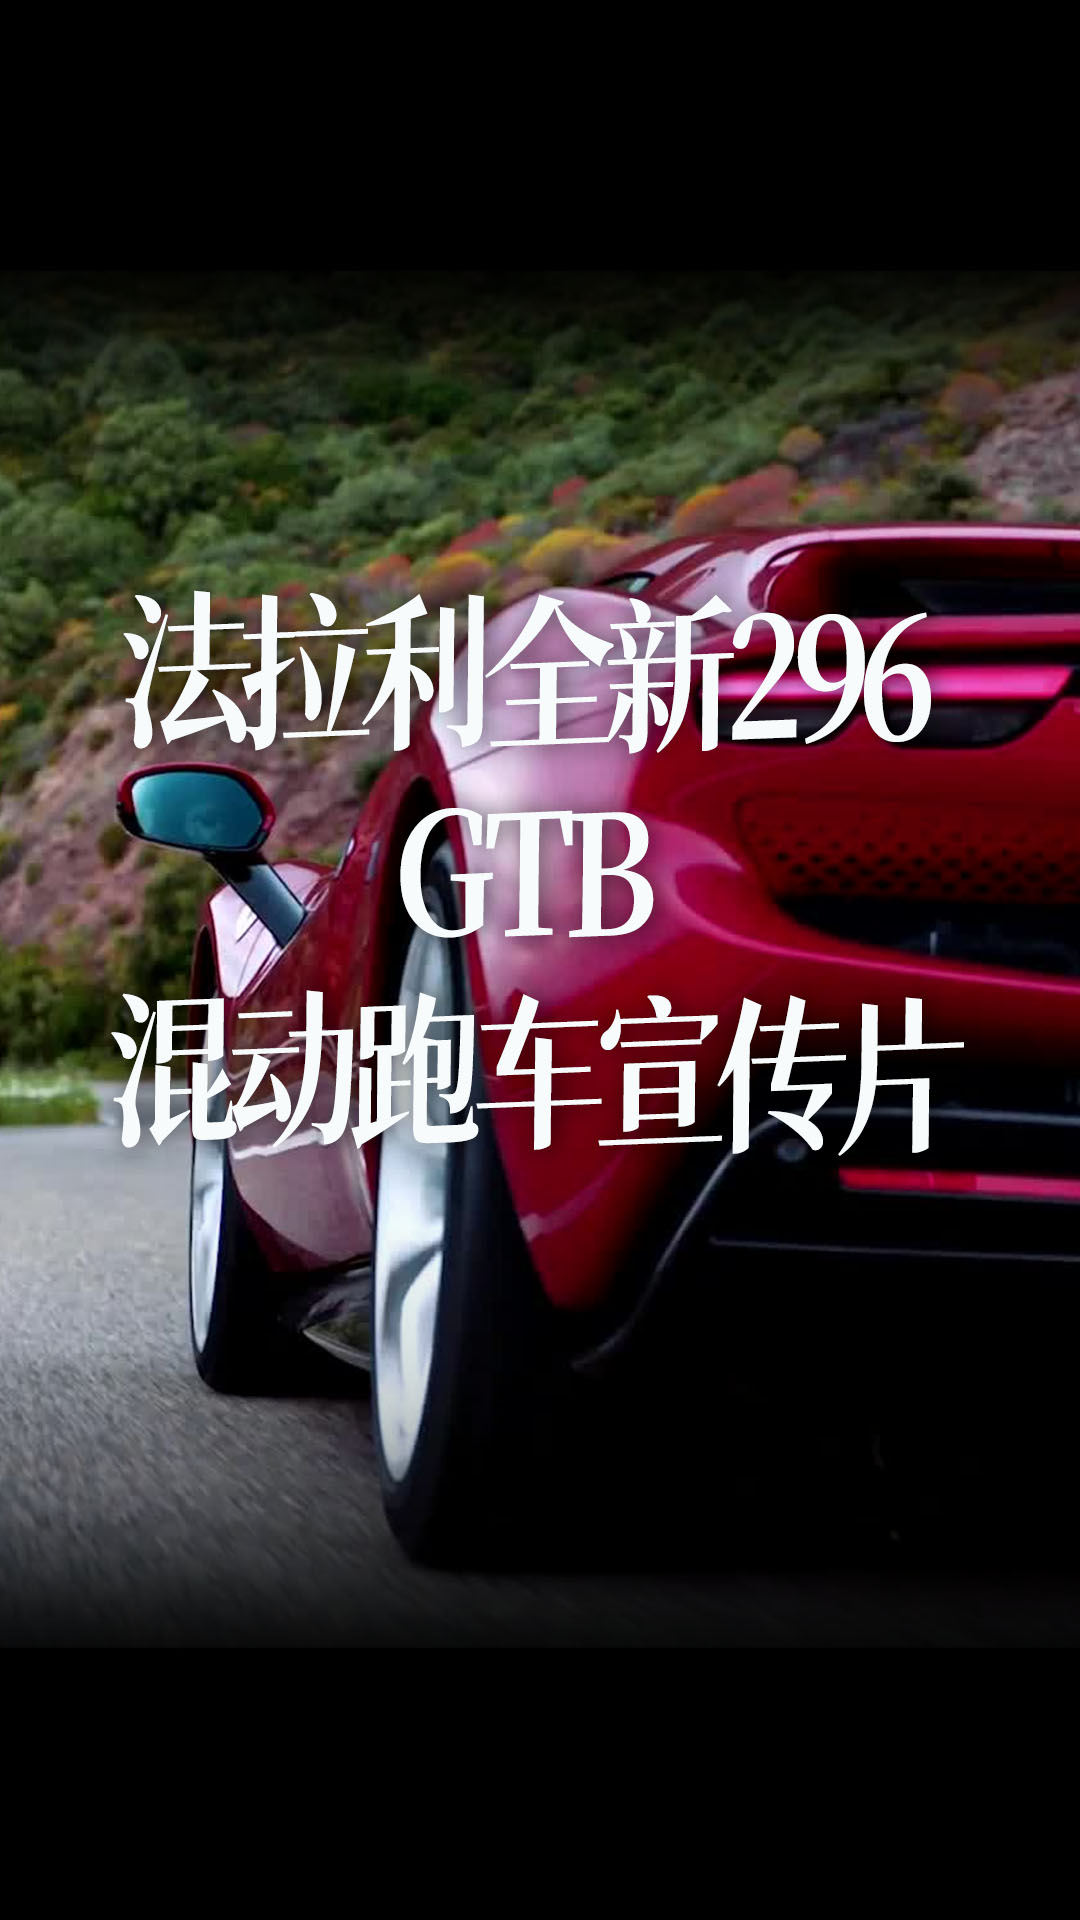 法拉利全新296 GTB 混动跑车宣传片